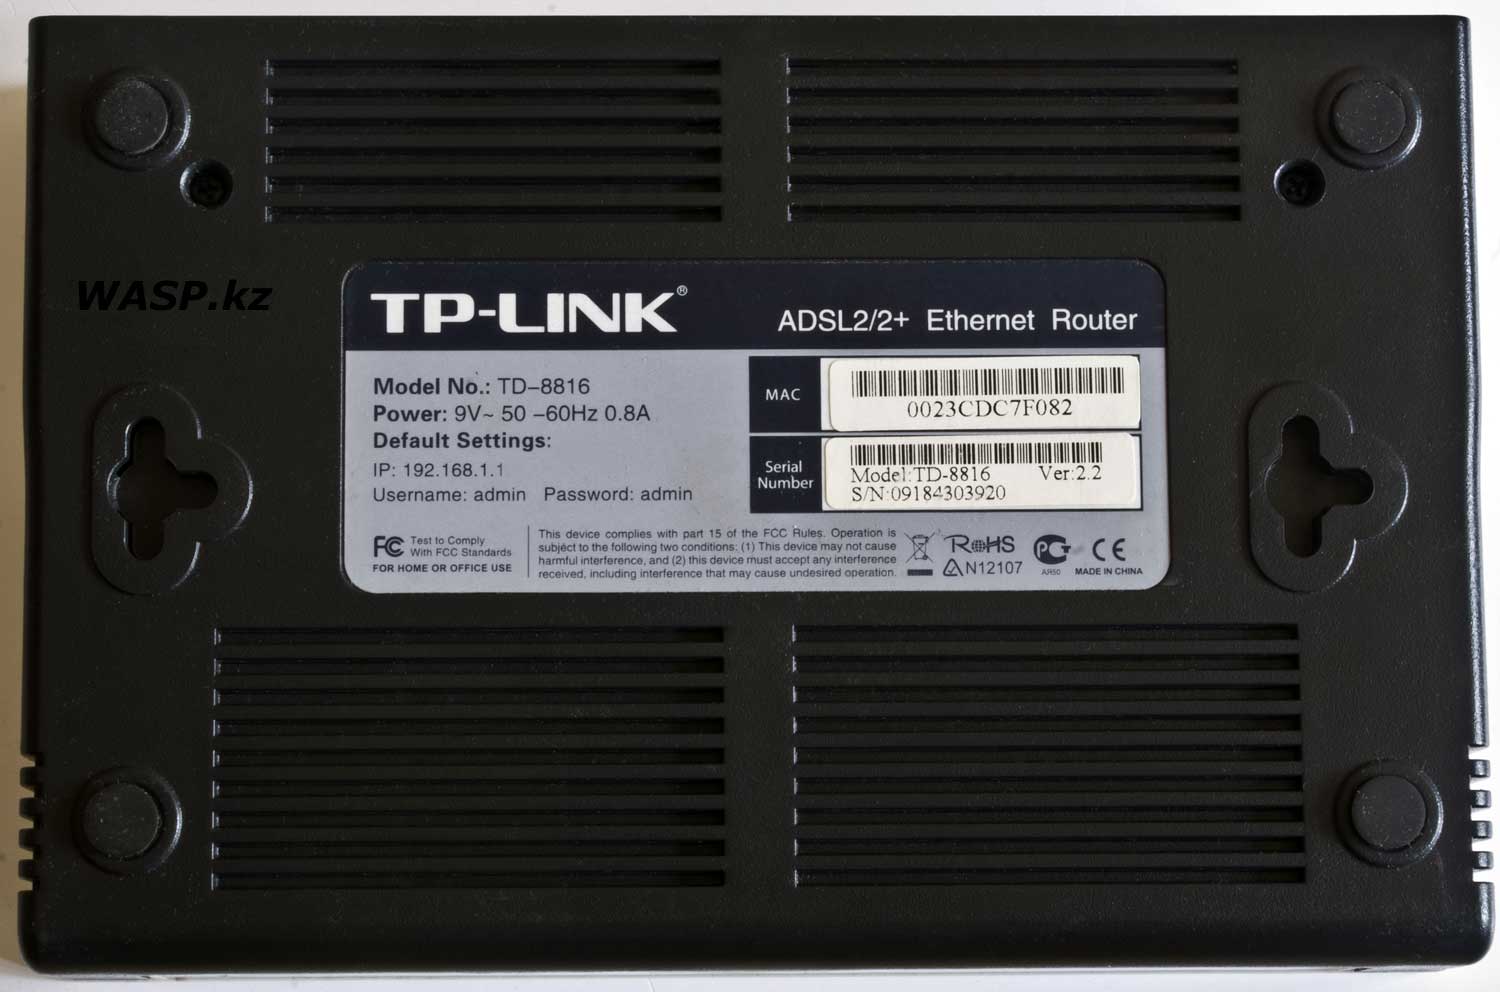 TP-LINK TD-8816 Ver:2.2 полный обзор модема и маршрутизатора